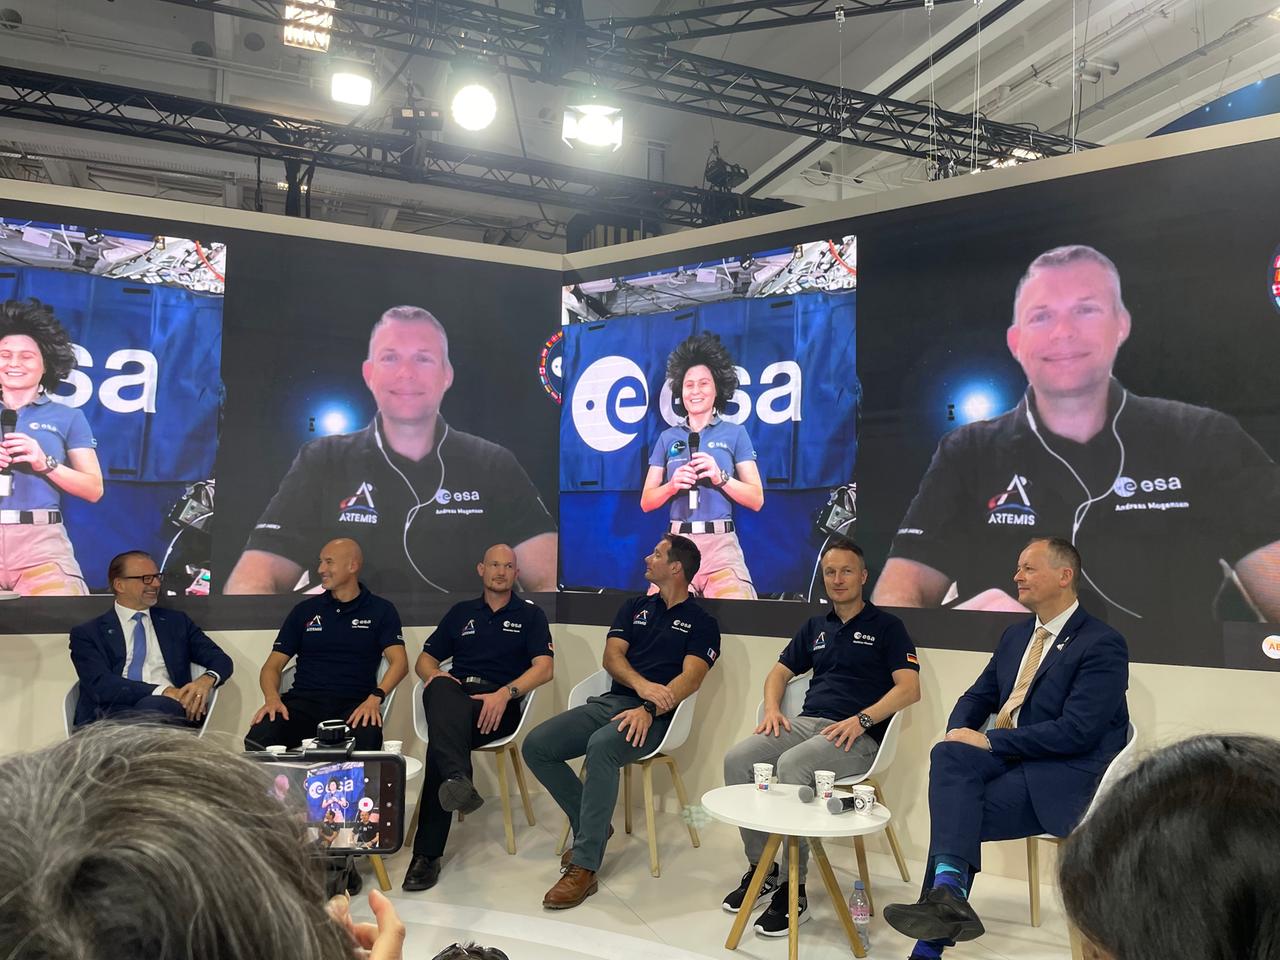 Die europäischen Astronauten - Konkurrenten um die wenigen begehrten Plätze zum Mond.